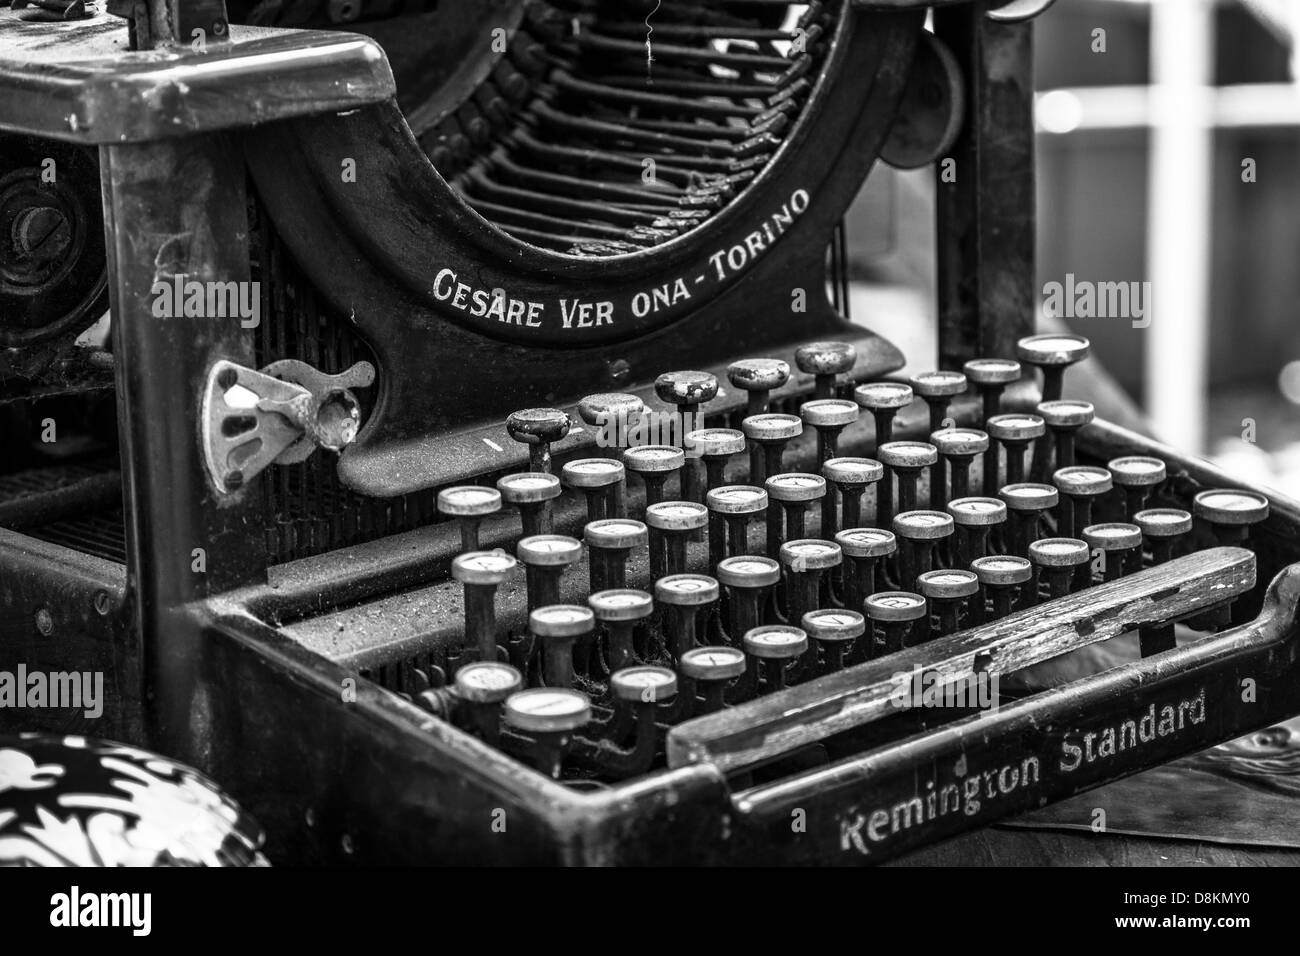 Remington Standard Typewriter Stockfotos und -bilder Kaufen - Alamy